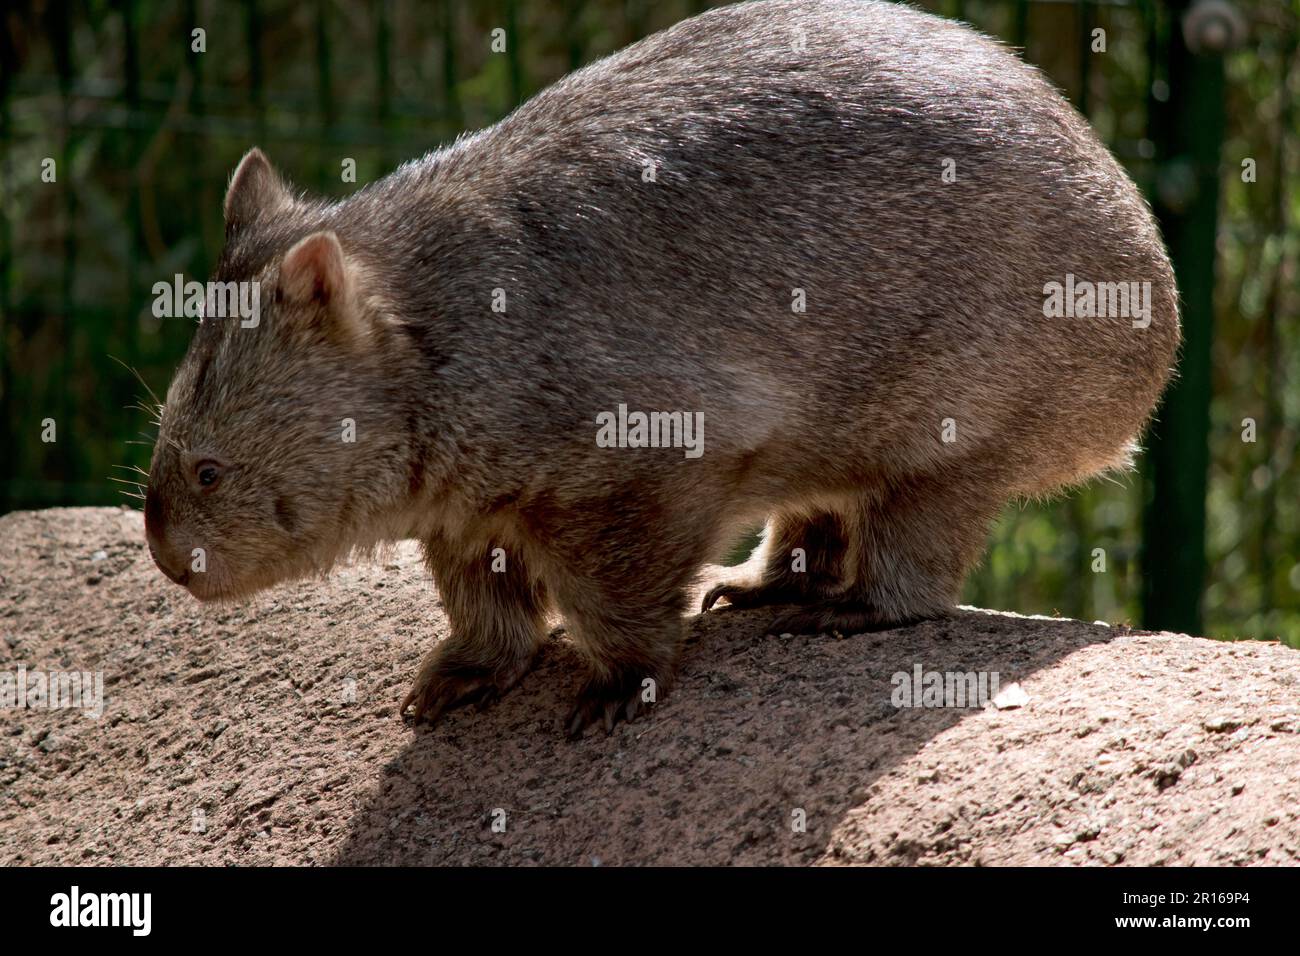 il comune wombat ha una testa grande e smussata con piccoli occhi e orecchie, e un collo corto e muscoloso. I loro artigli affilati e le loro gambe ostinate e potenti li rendono Foto Stock